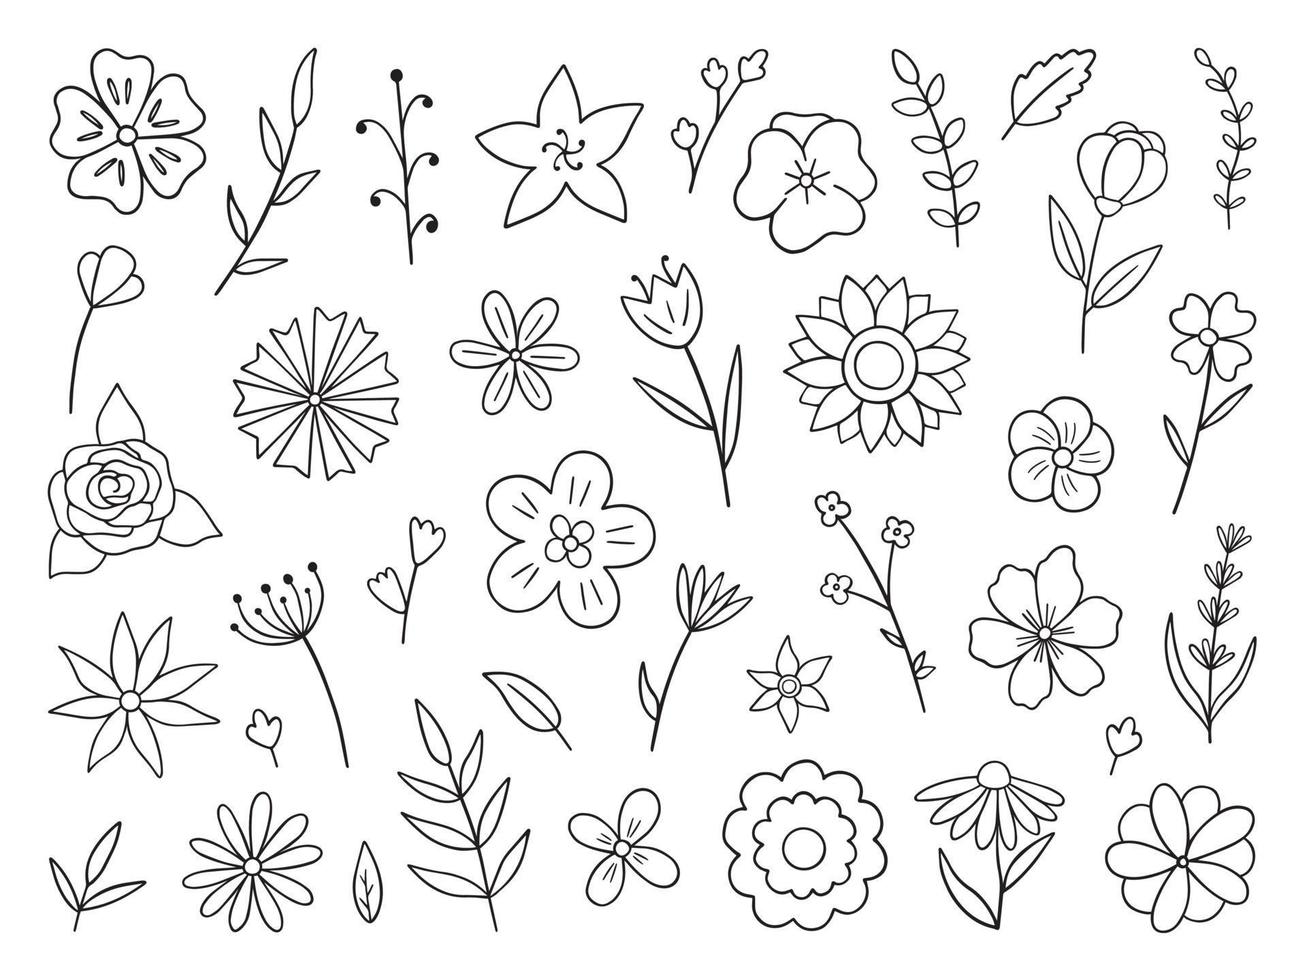 insieme disegnato a mano di fiori e rami doodle. elementi floreali ed a base di erbe in stile schizzo. illustrazione vettoriale isolato su sfondo bianco.